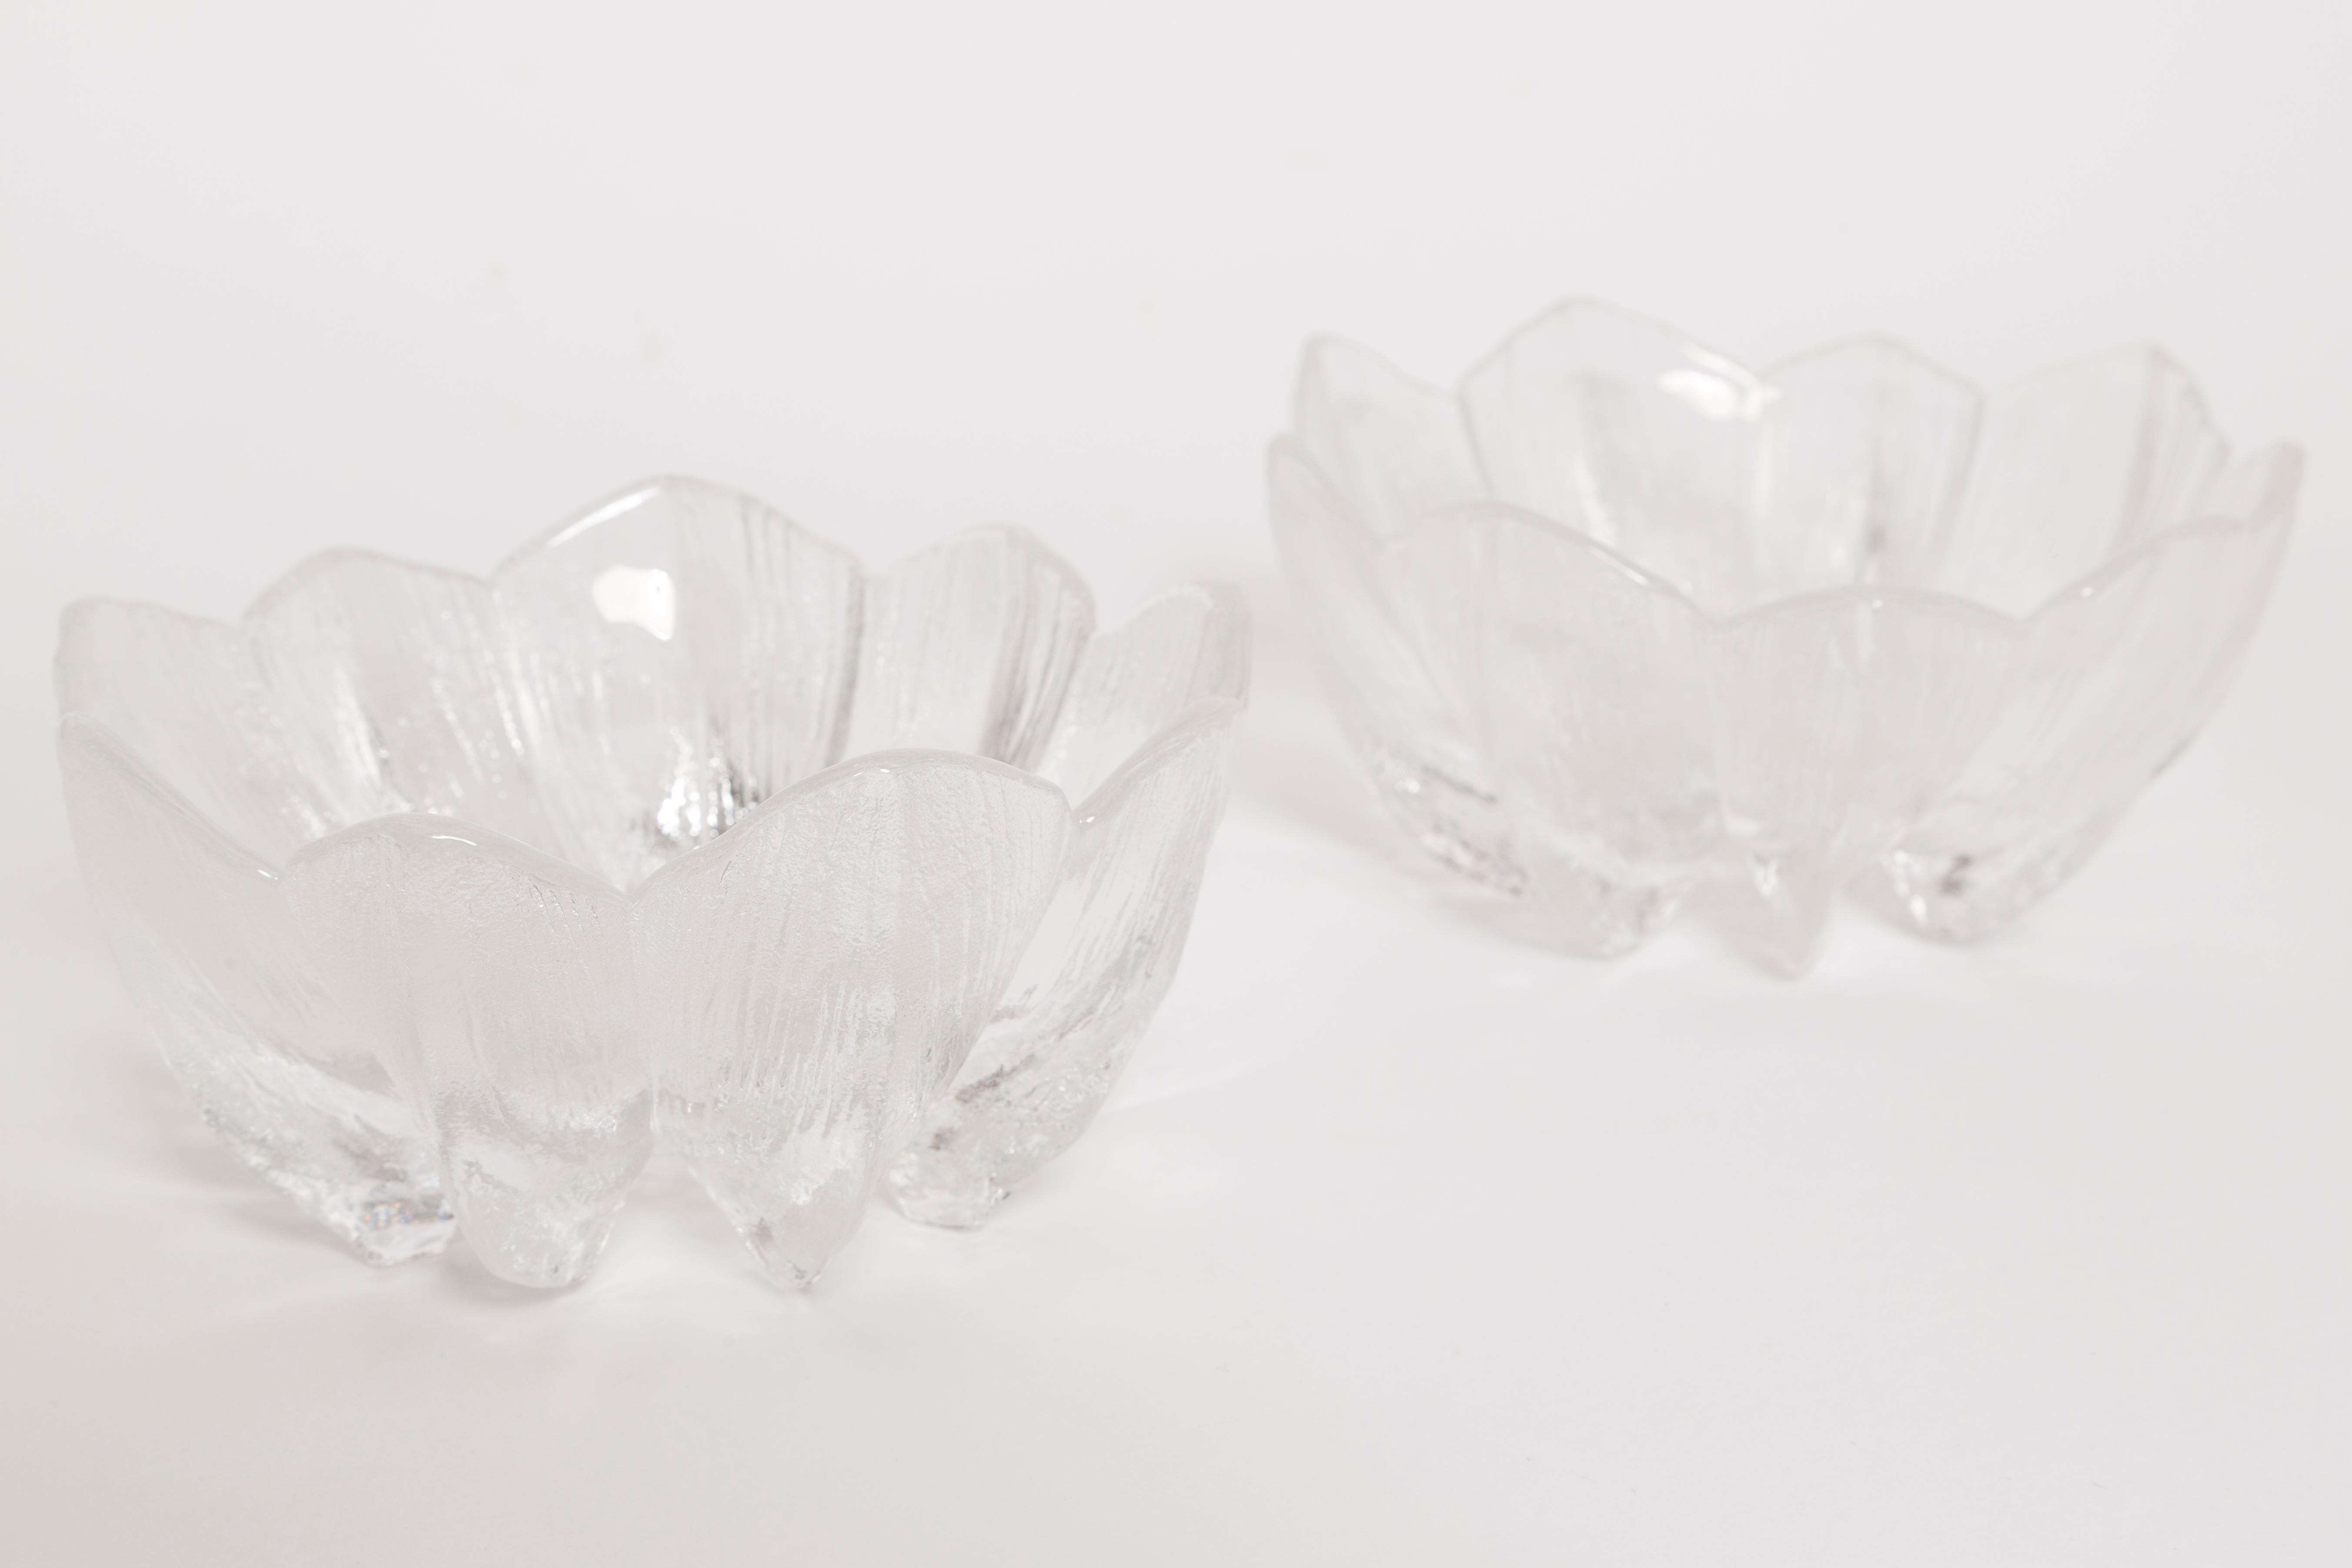 Paire de bols décoratifs transparents en forme de panier conçus par Jan Sylwester Drost dans les années 1960, en provenance de Pologne. Les bols sont en très bon état vintage, sans dommages ni fissures. Verre original. Une belle pièce pour chaque